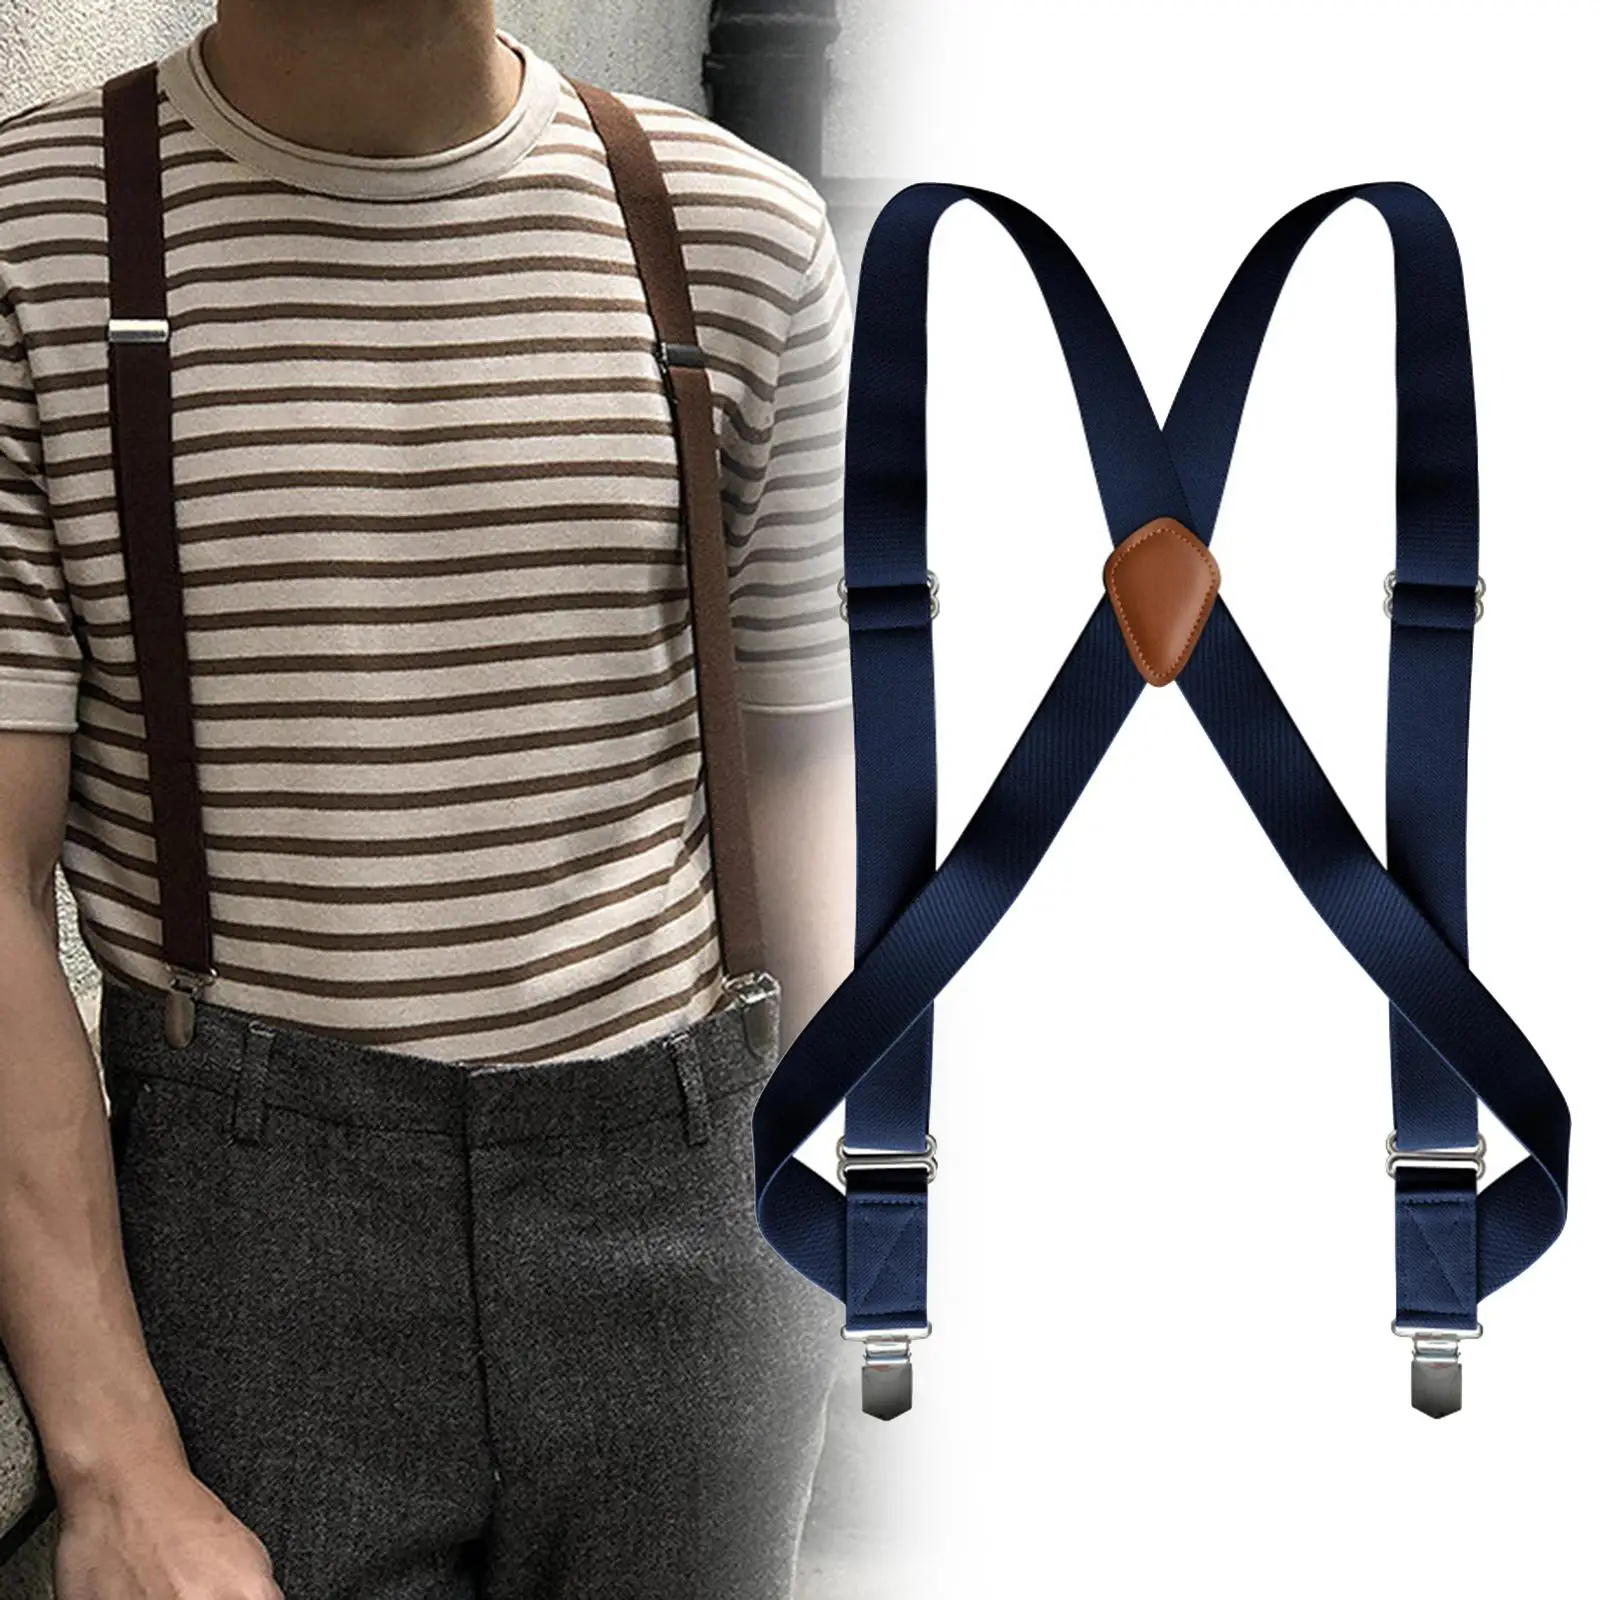 Suspender pria dengan klip, celana pemegang pria hadiah dapat dicuci dan digunakan kembali untuk celana pendek Teman orkestra Band Prom